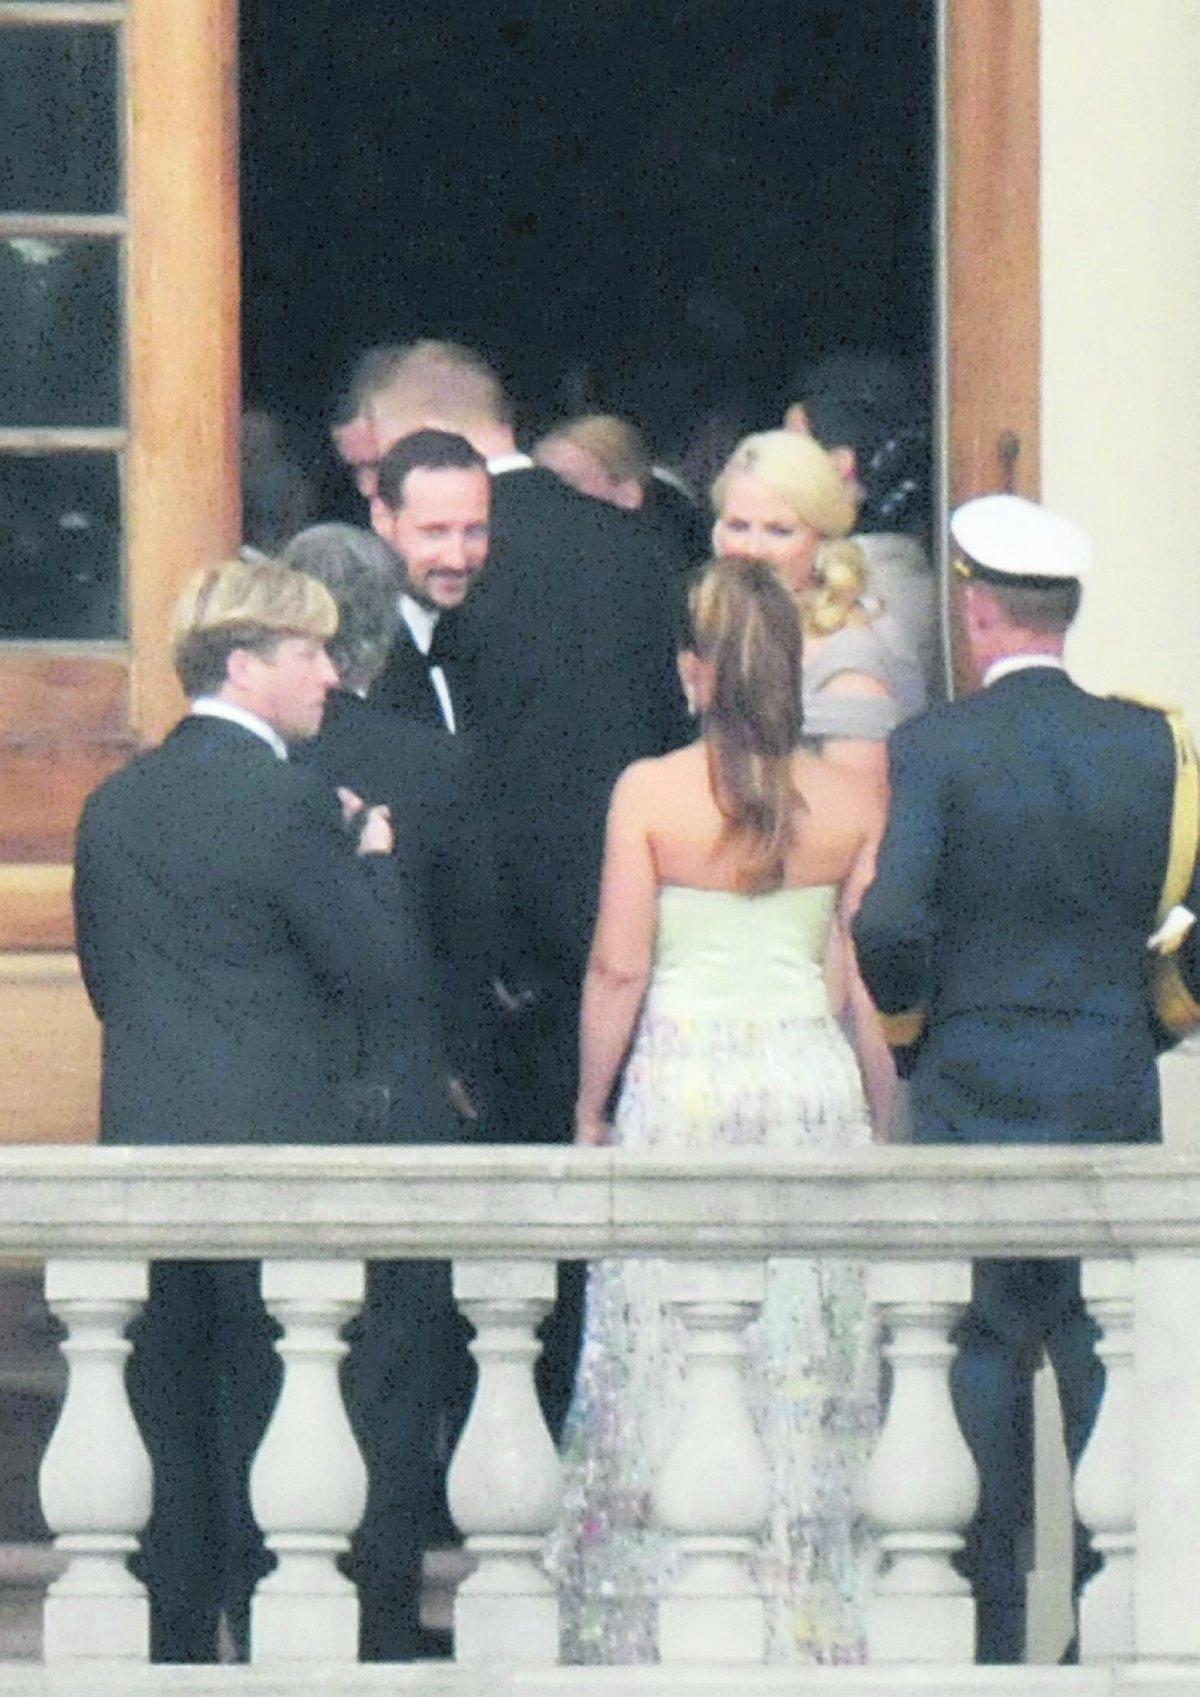 Norska kronprinsparet Haakon och Mette-Marit gör entré tillsammans med prinsessan Märtha Louise och Ari Behn (med ryggarna emot).